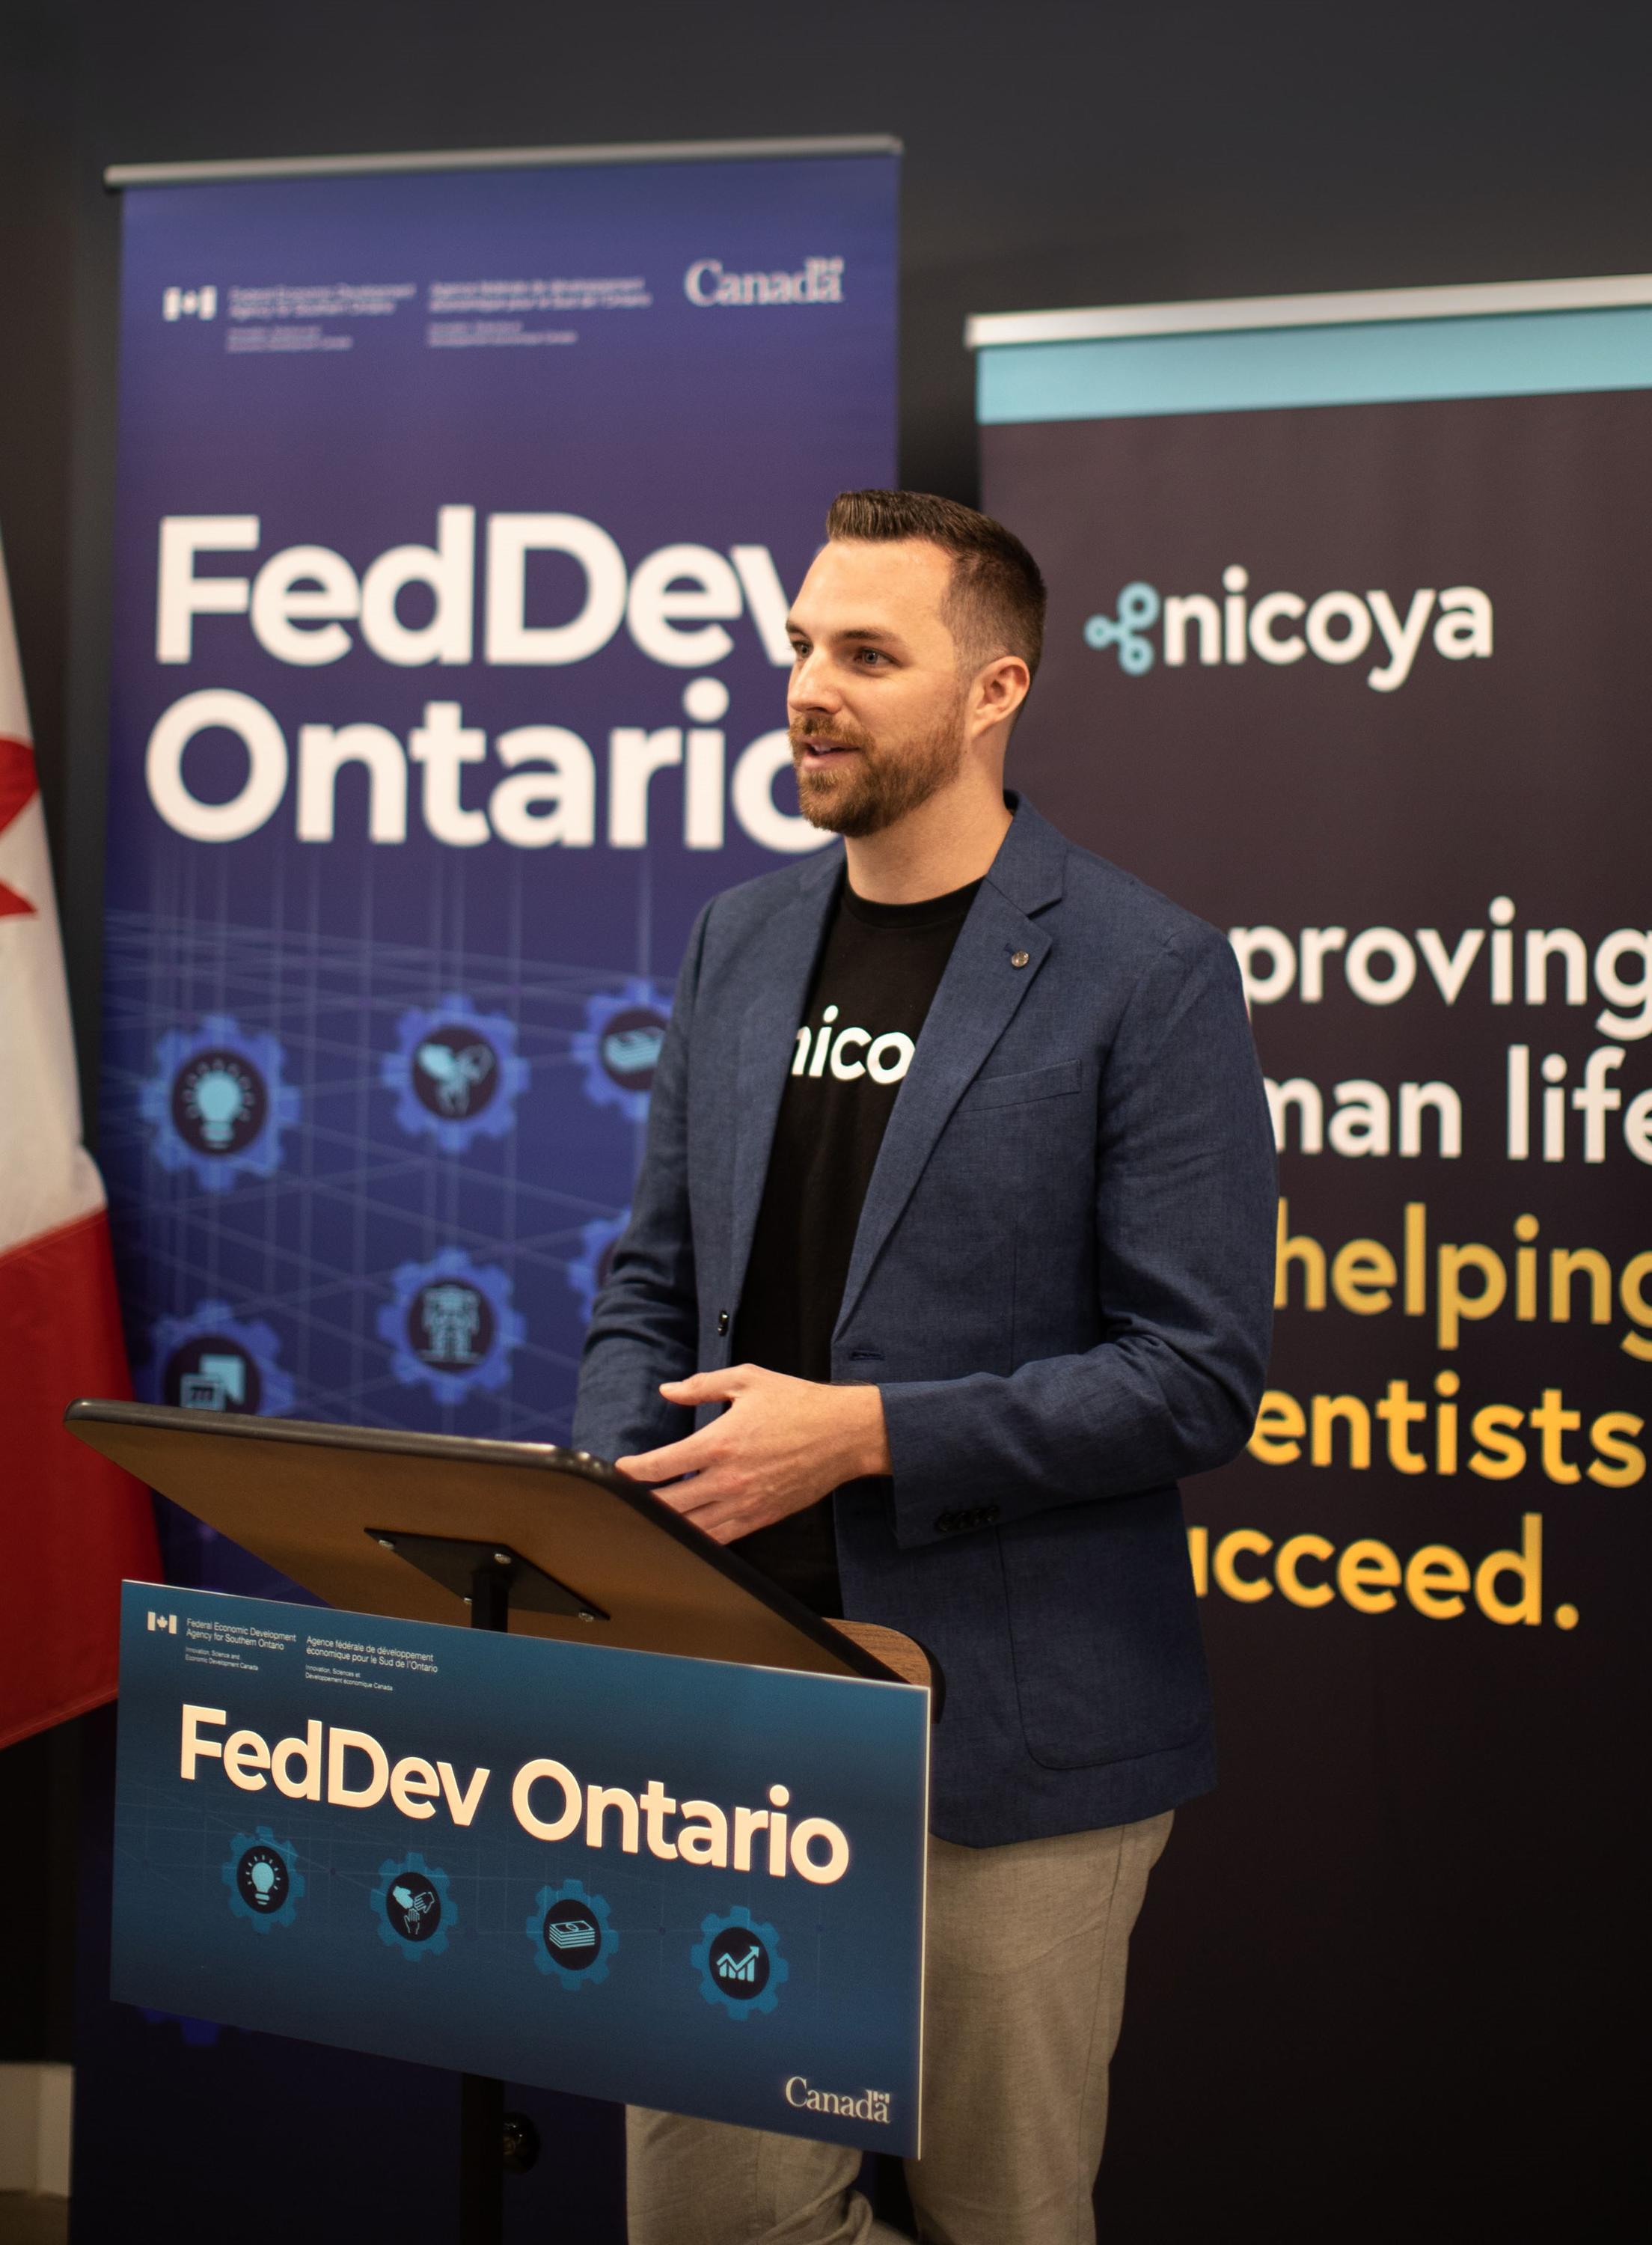 Ryan Denomme, speaking from behind a FedDev Ontario podium.